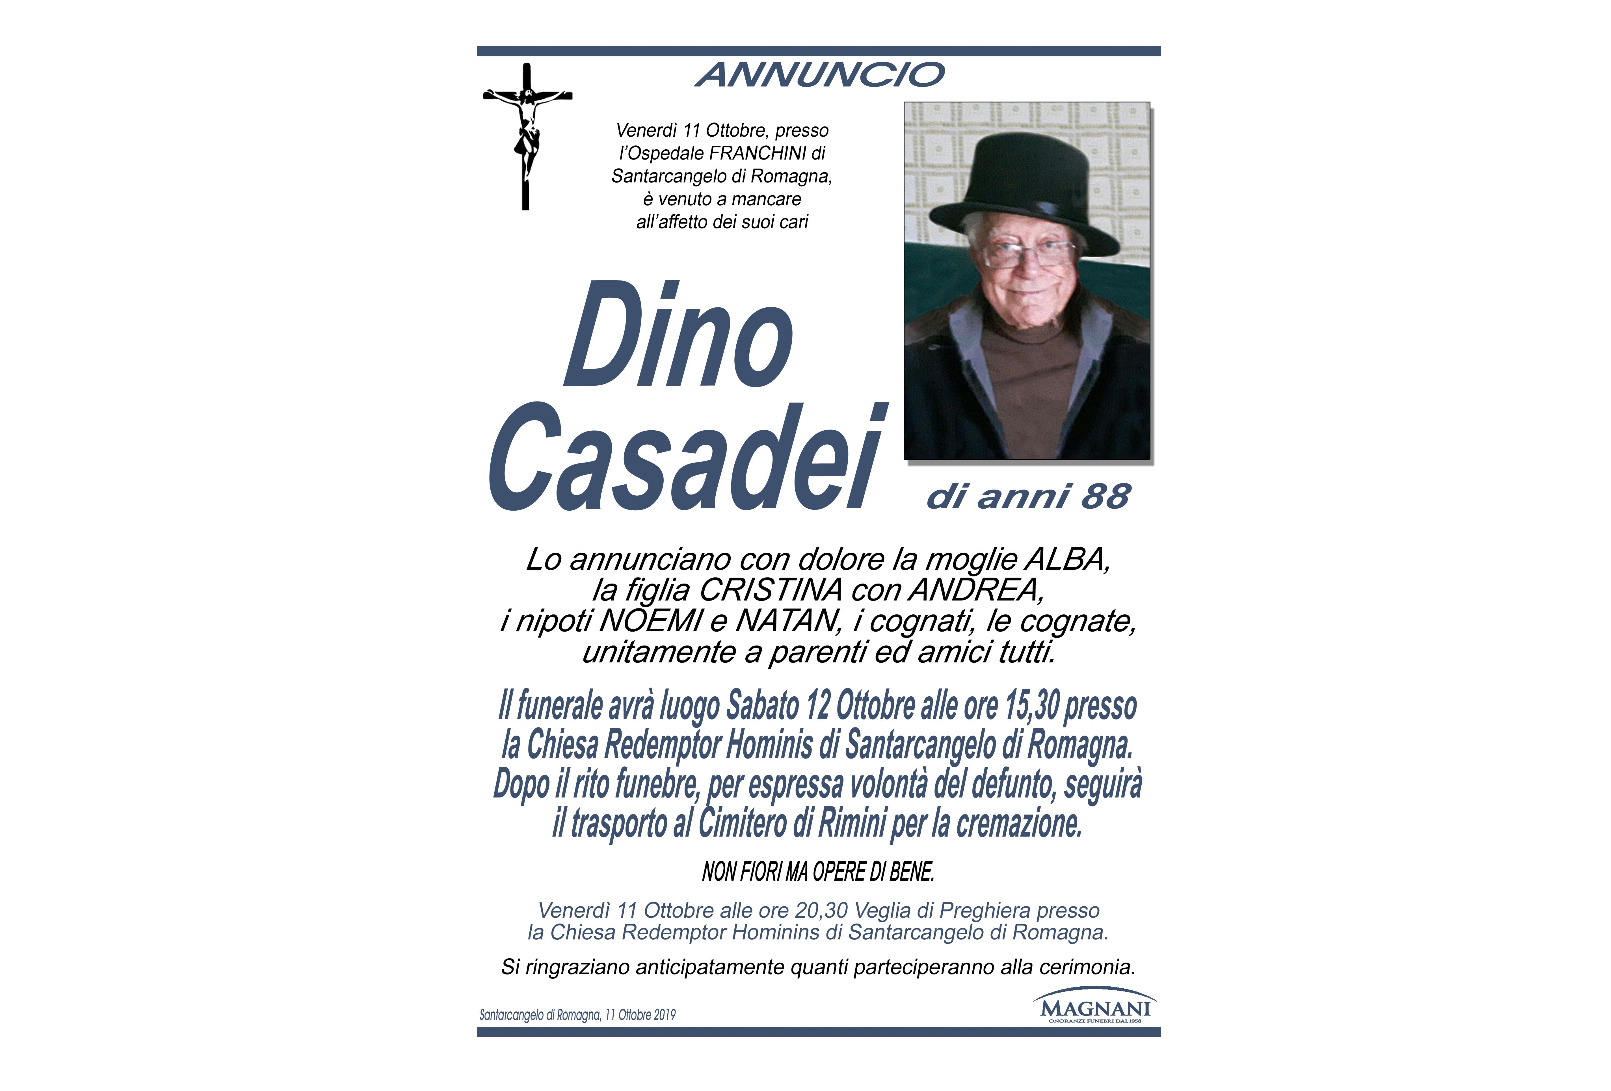 Dino Casadei